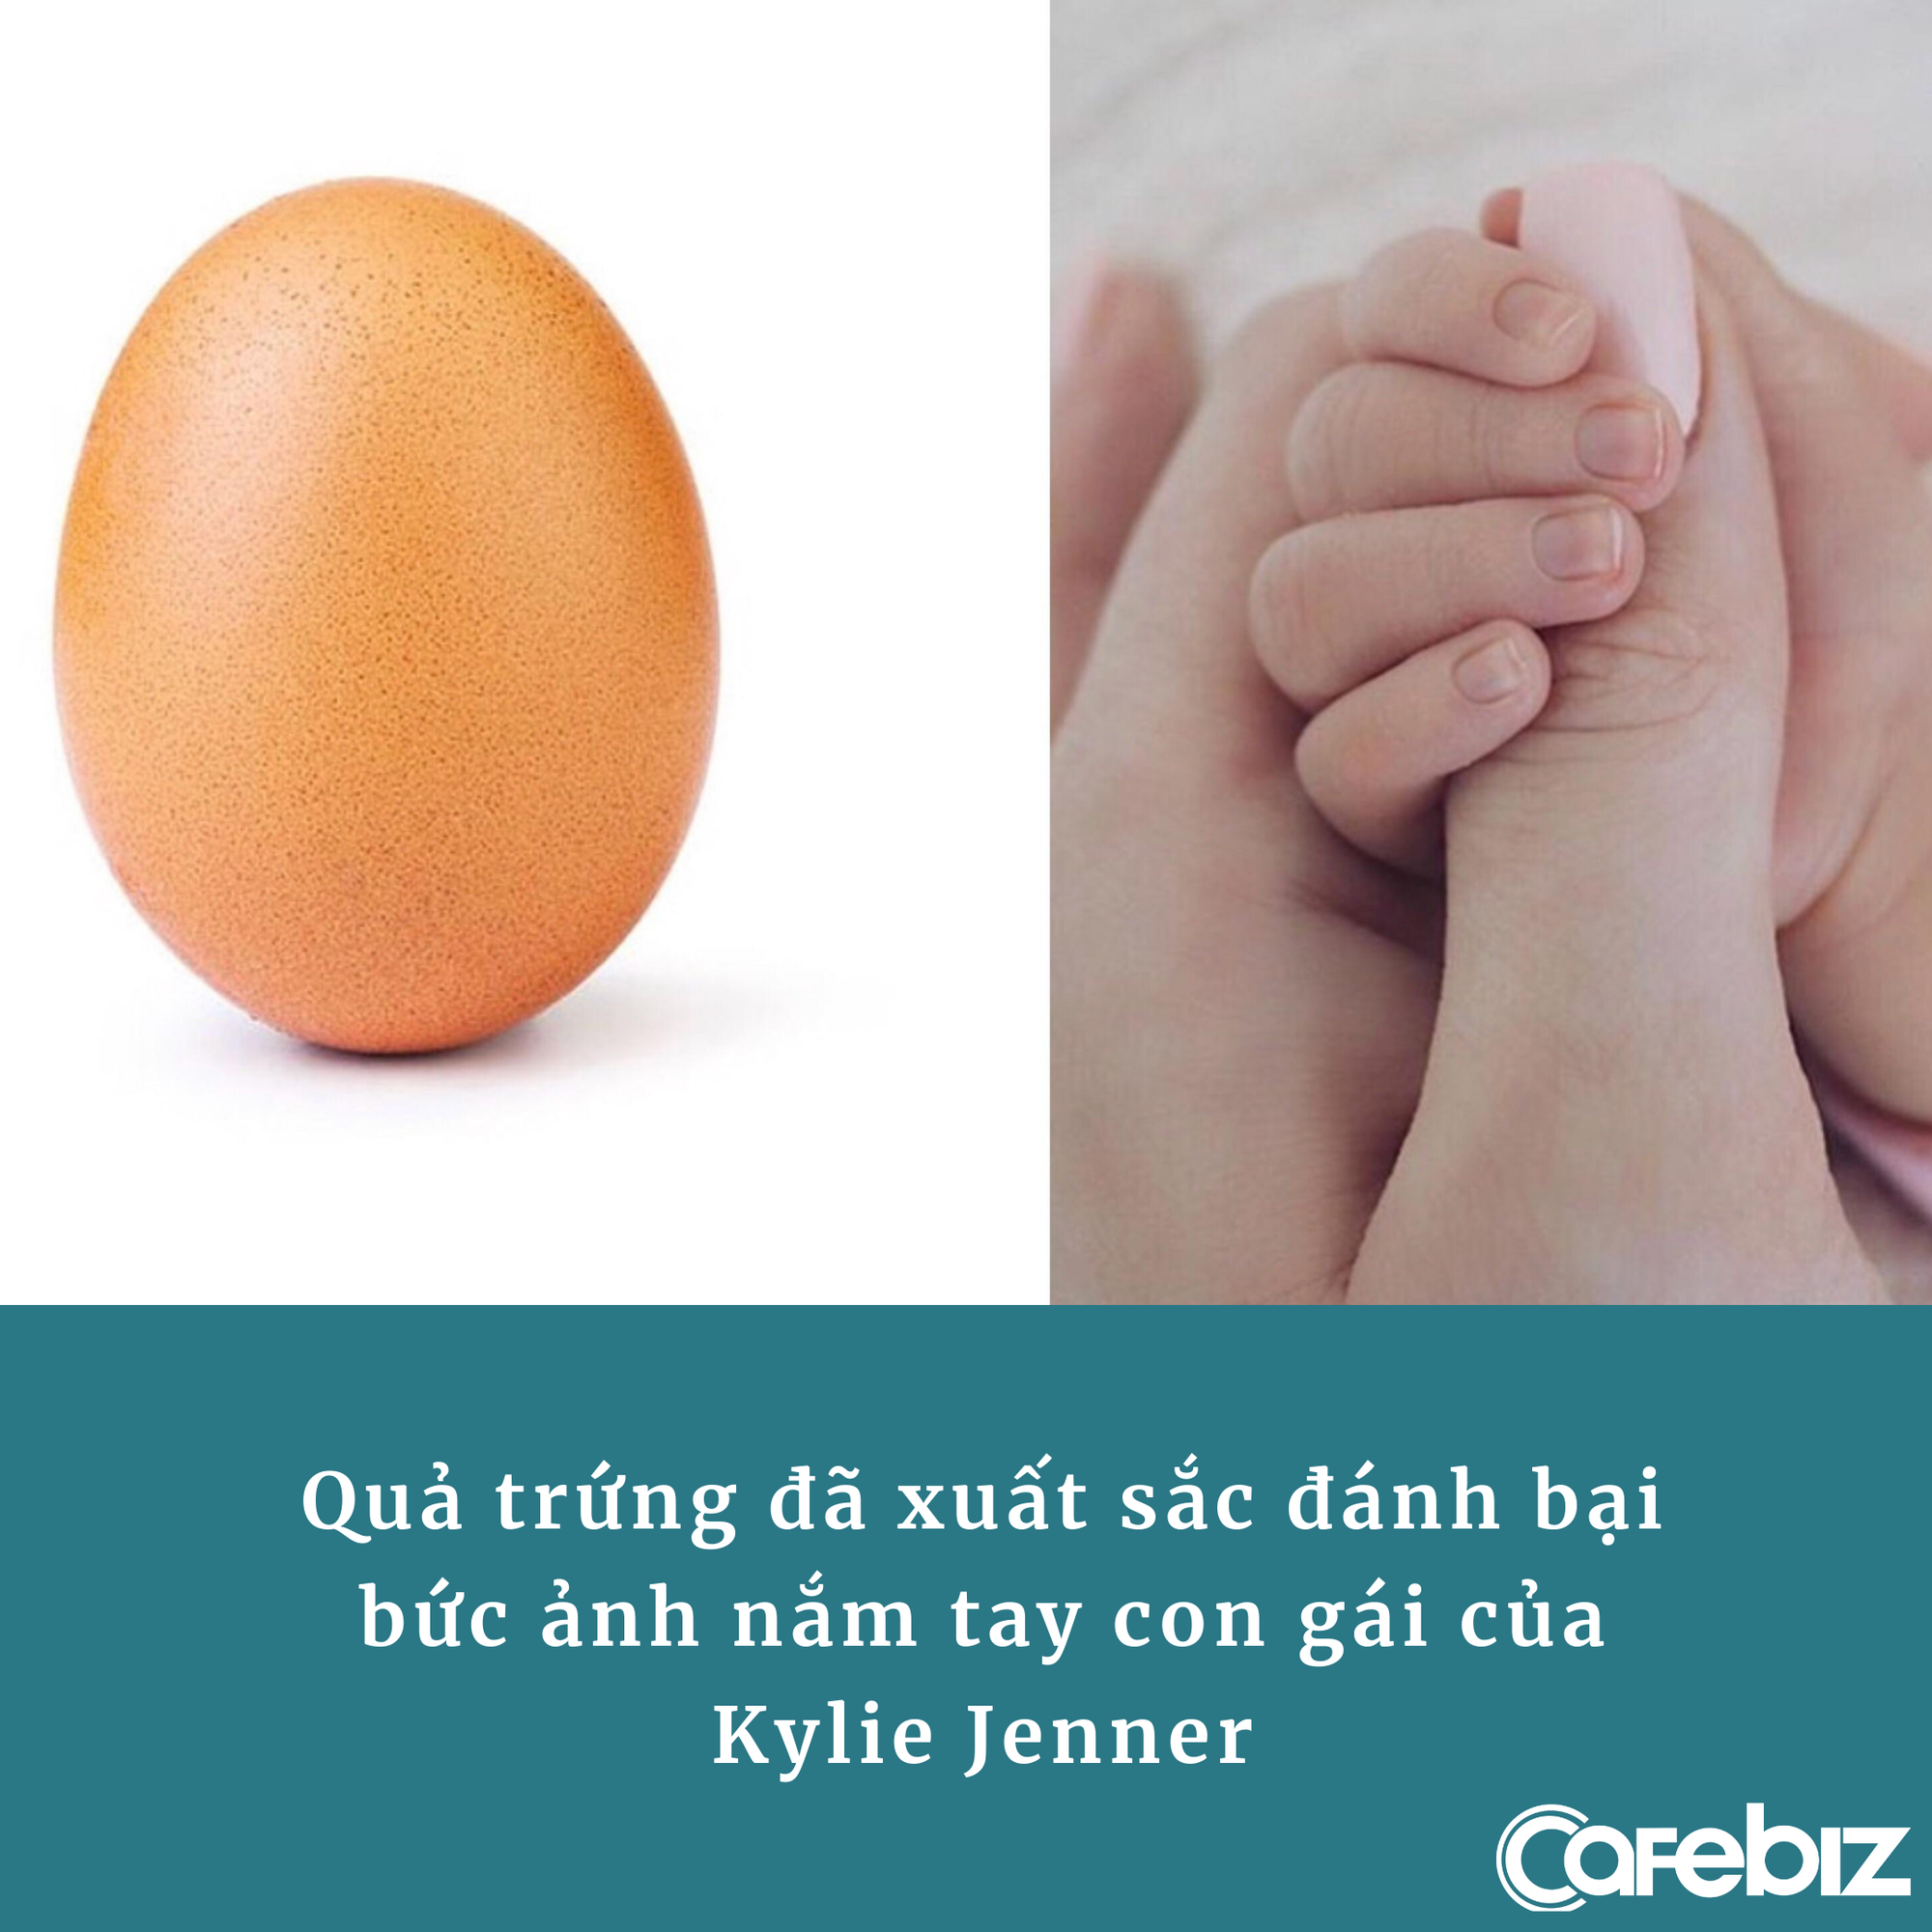 5 bài học marketing từ quả trứng ‘nhạt nhẽo’ có gần 5 triệu follower, từng đánh bại Kylie Jenner và phá vỡ kỷ lục thế giới - Ảnh 1.